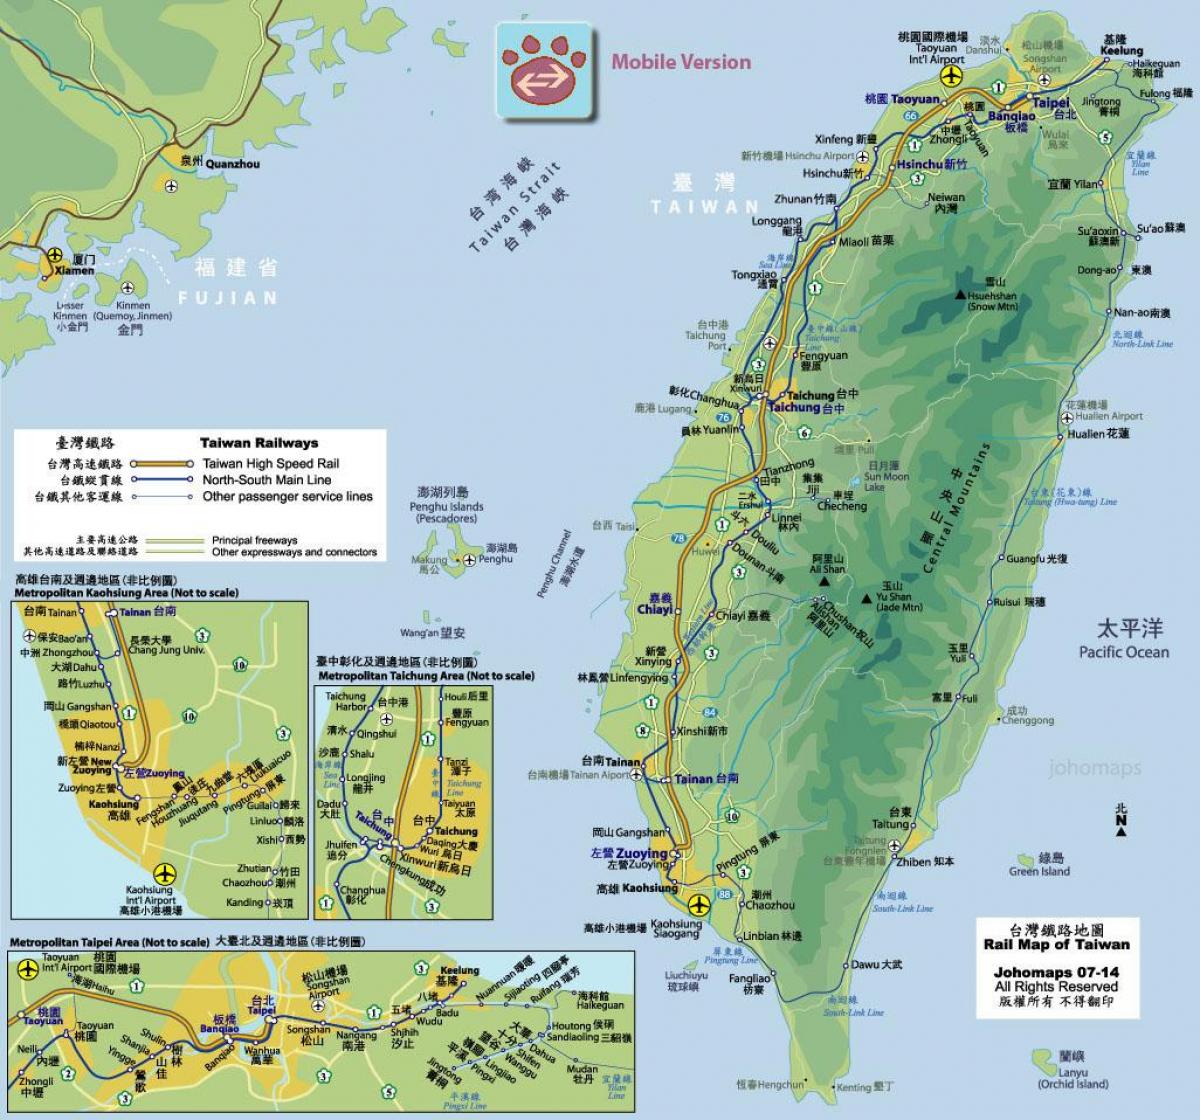 ტაივანის რკინიგზის მატარებლის რუკა